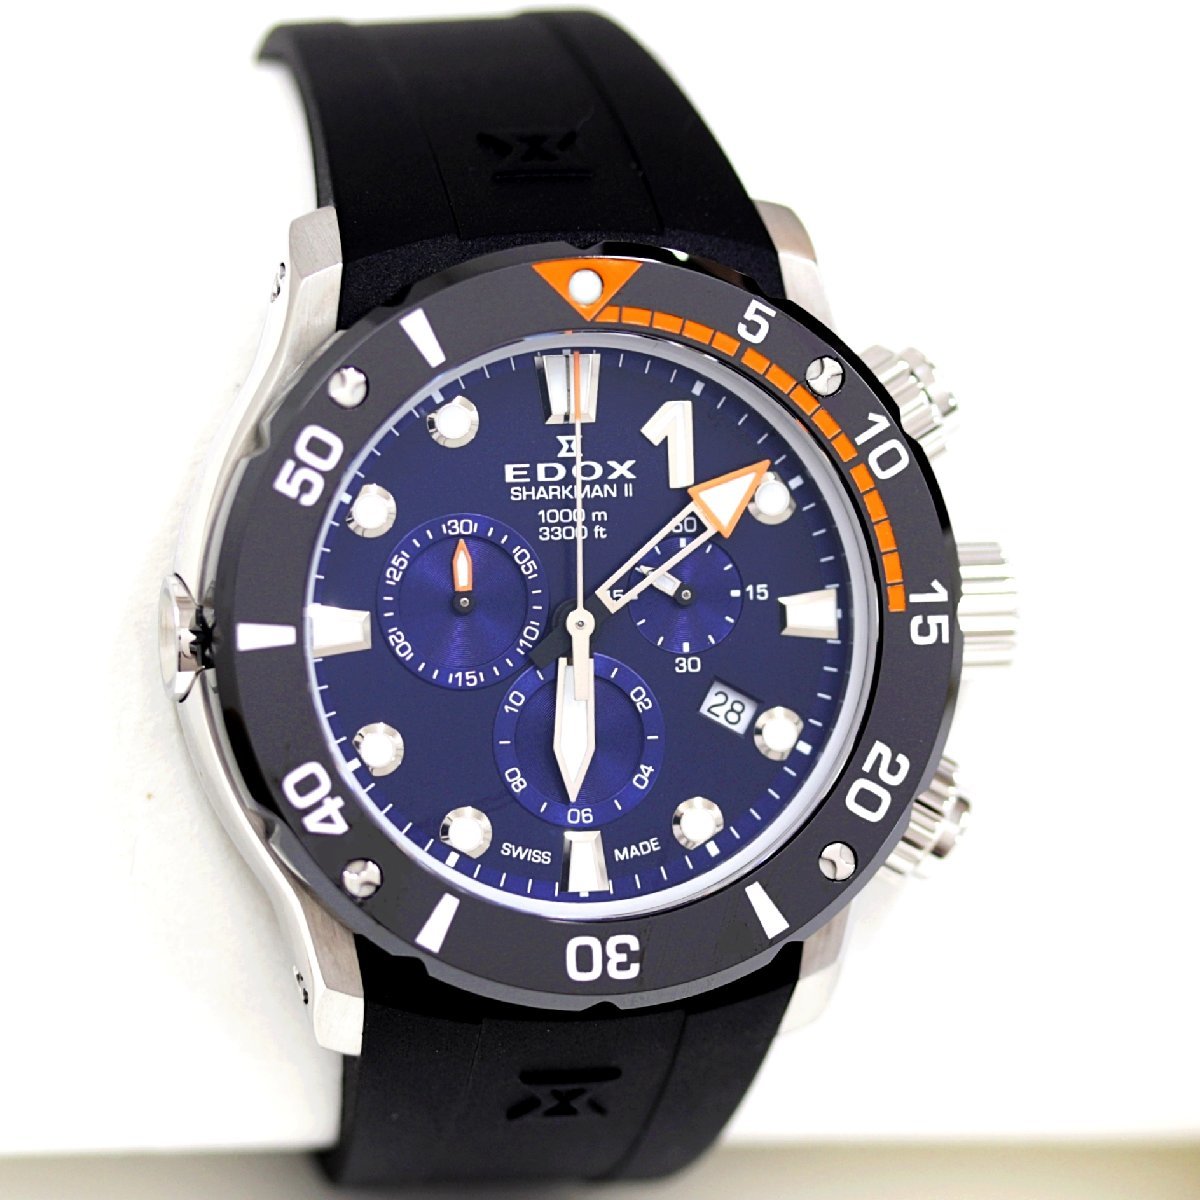  Ed ks Chrono offshore 1 shaku man 2 300шт.@ ограничение 10234-3O-BUIN наручные часы хронограф кварц мужской как новый товар 